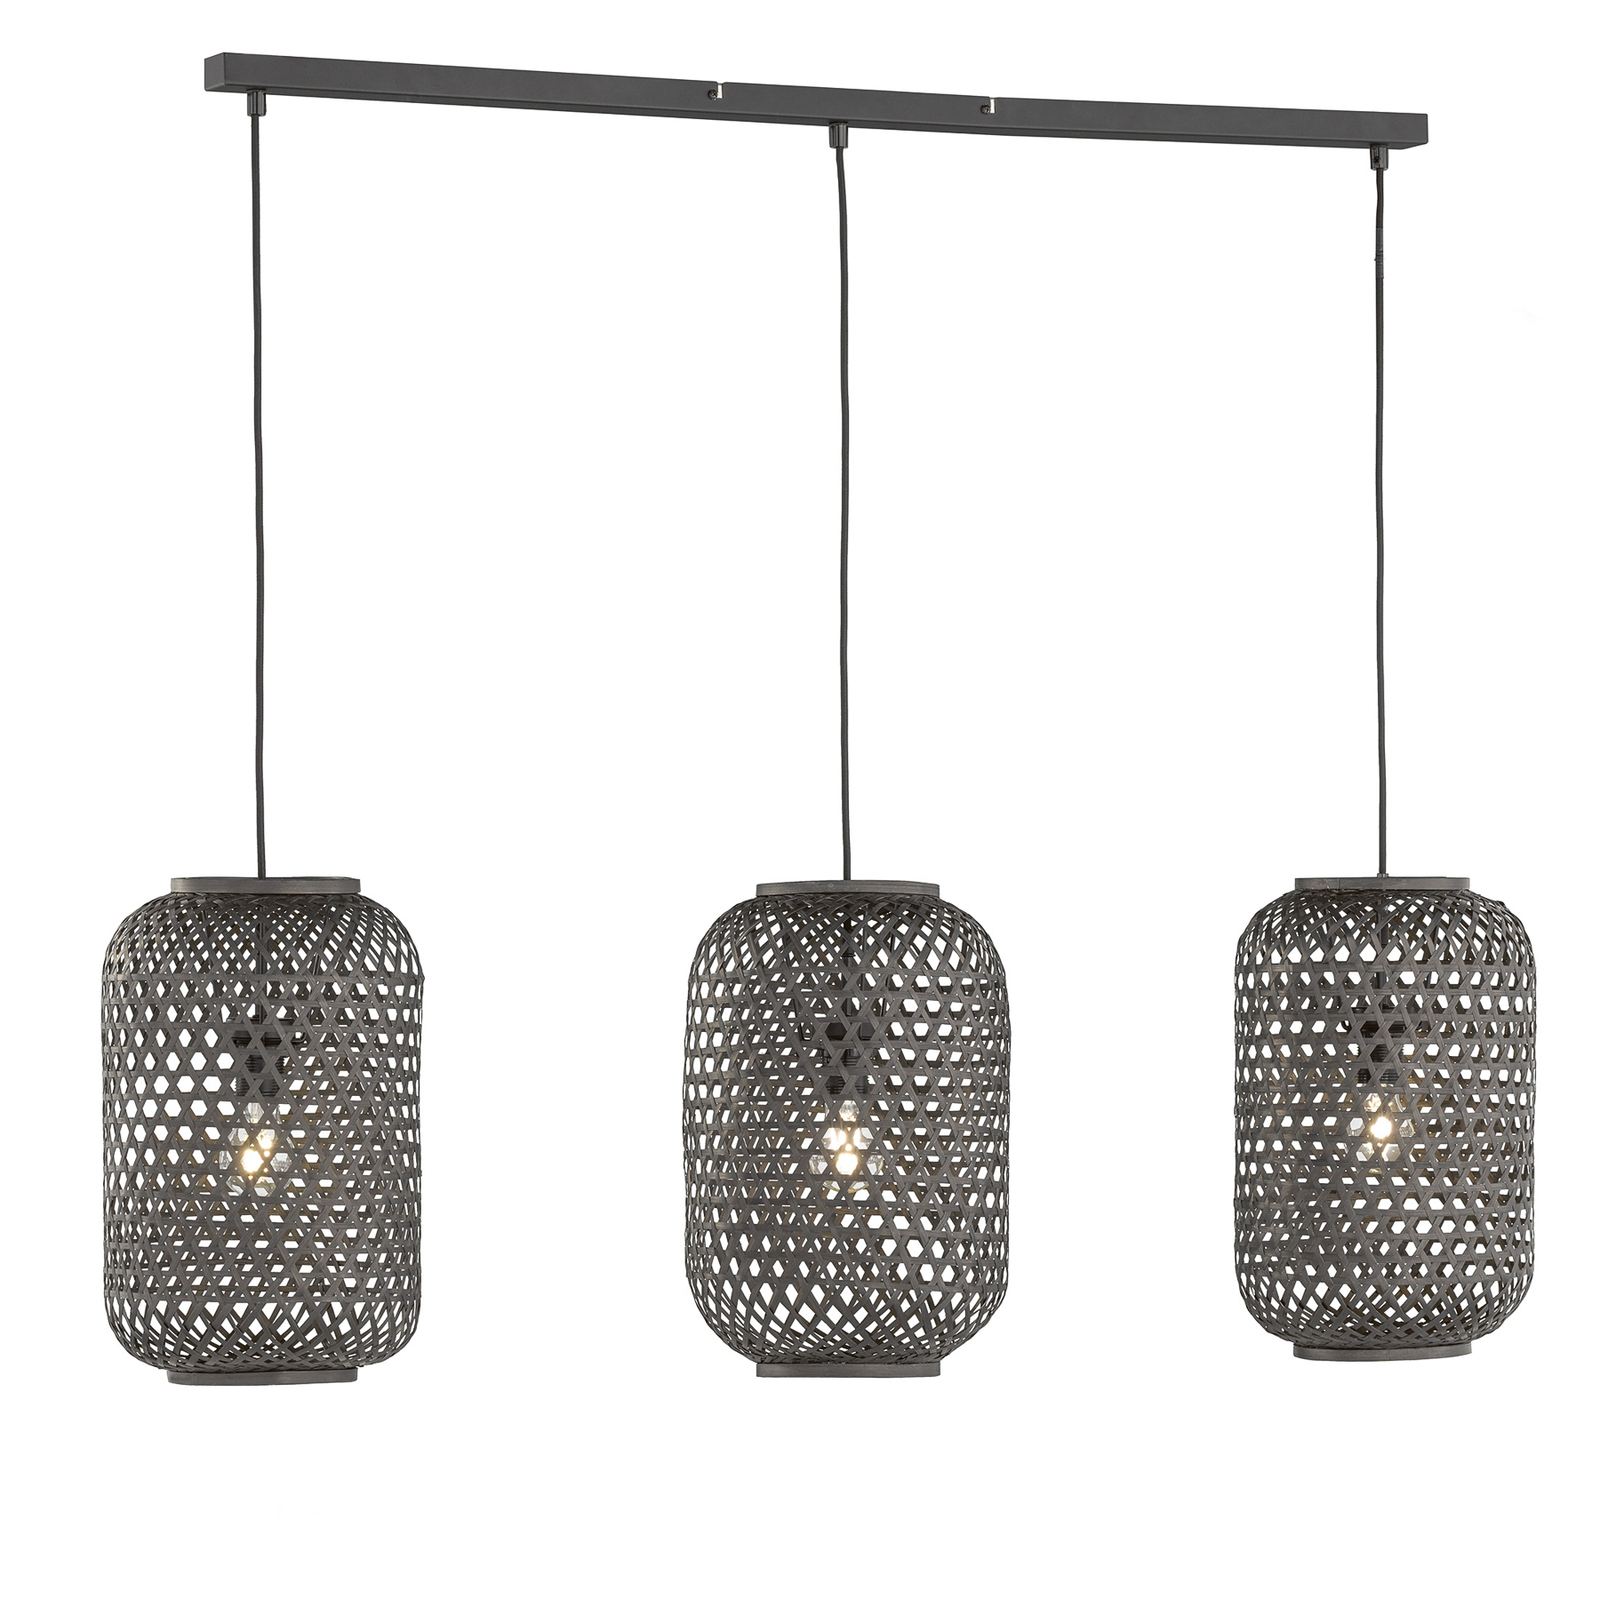 Schöner Wohnen Calla hanglamp 3-lamps zwart